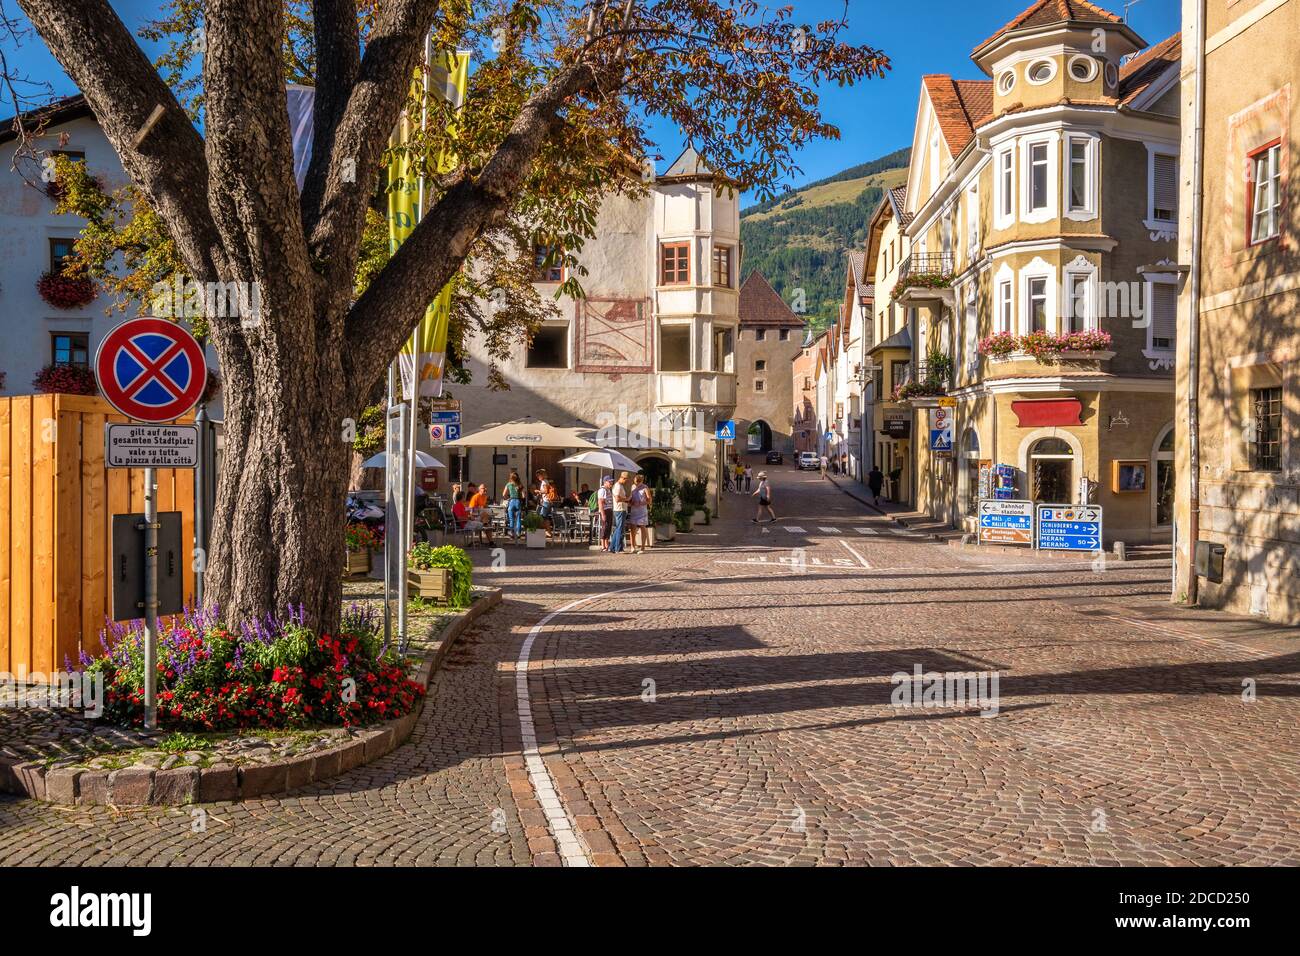 Glorenza, Italia - 18 de septiembre de 2019: Una calle conduce hacia una de las puertas de la torre en el pueblo de Glorenza (Val Venosta, Alto Adige, Italia) Foto de stock